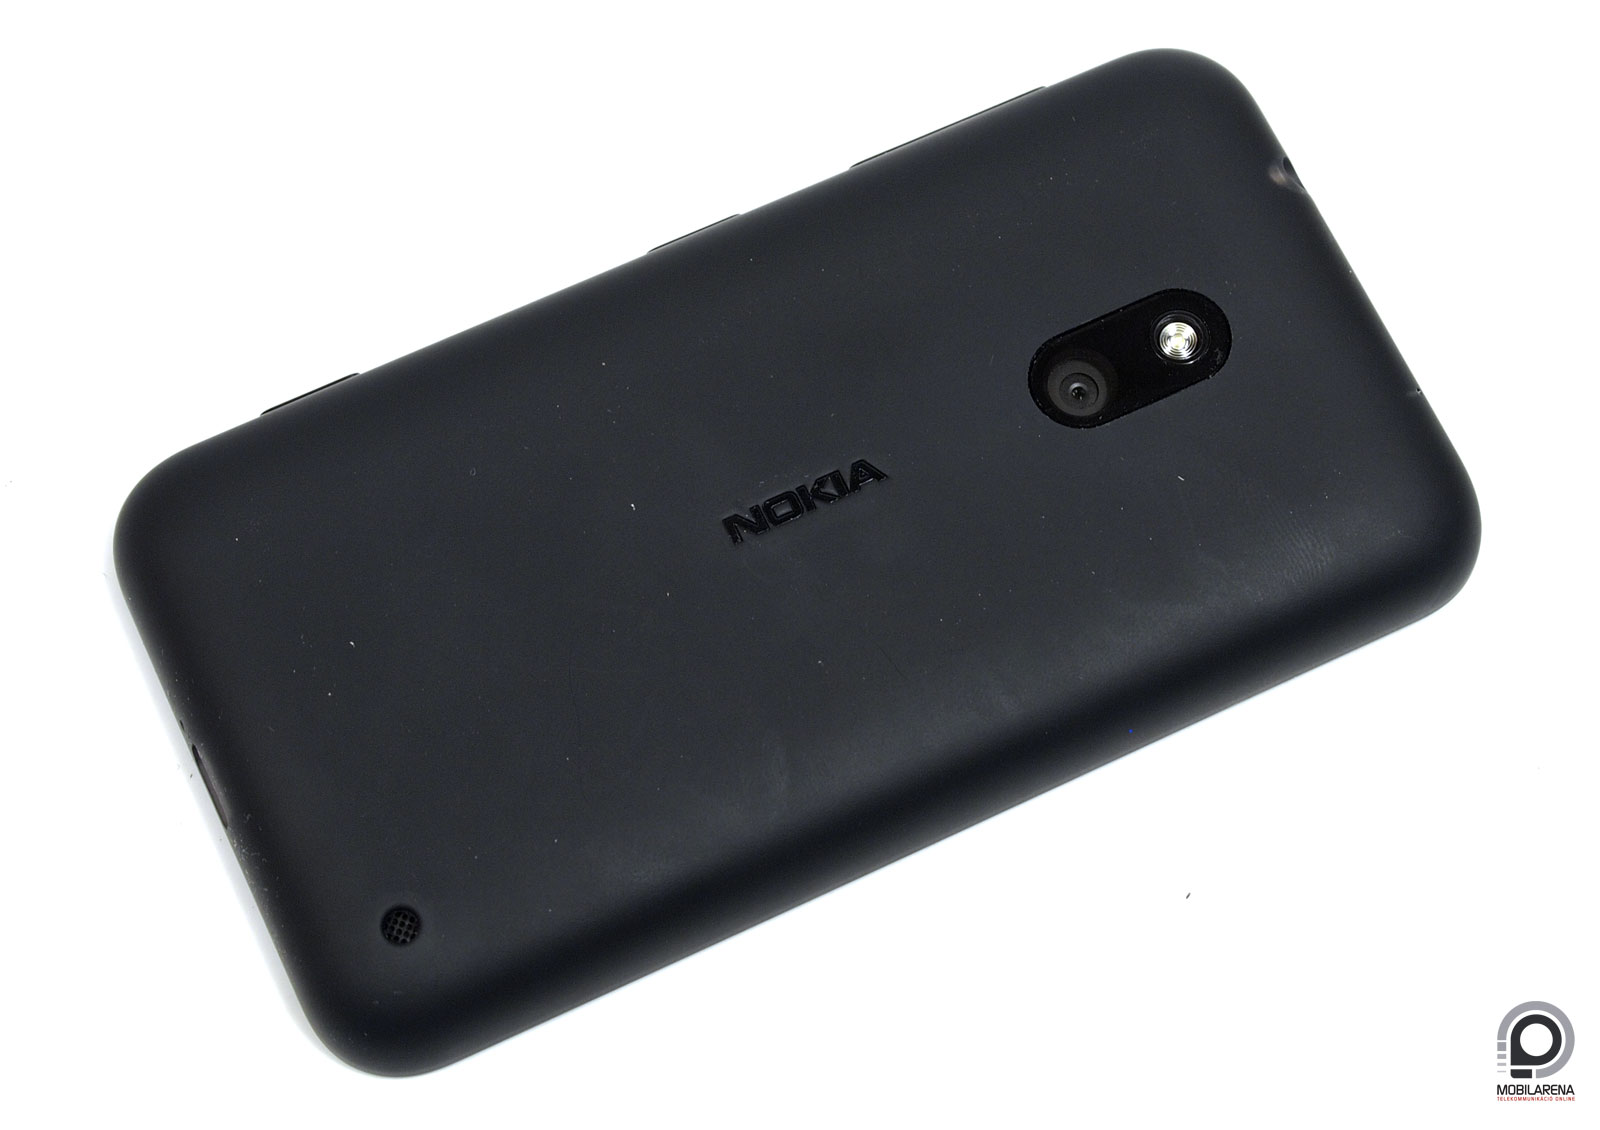 Nokia Lumia 620 - olcsó ablak északról - Mobilarena Okostelefon teszt -  Nyomtatóbarát verzió